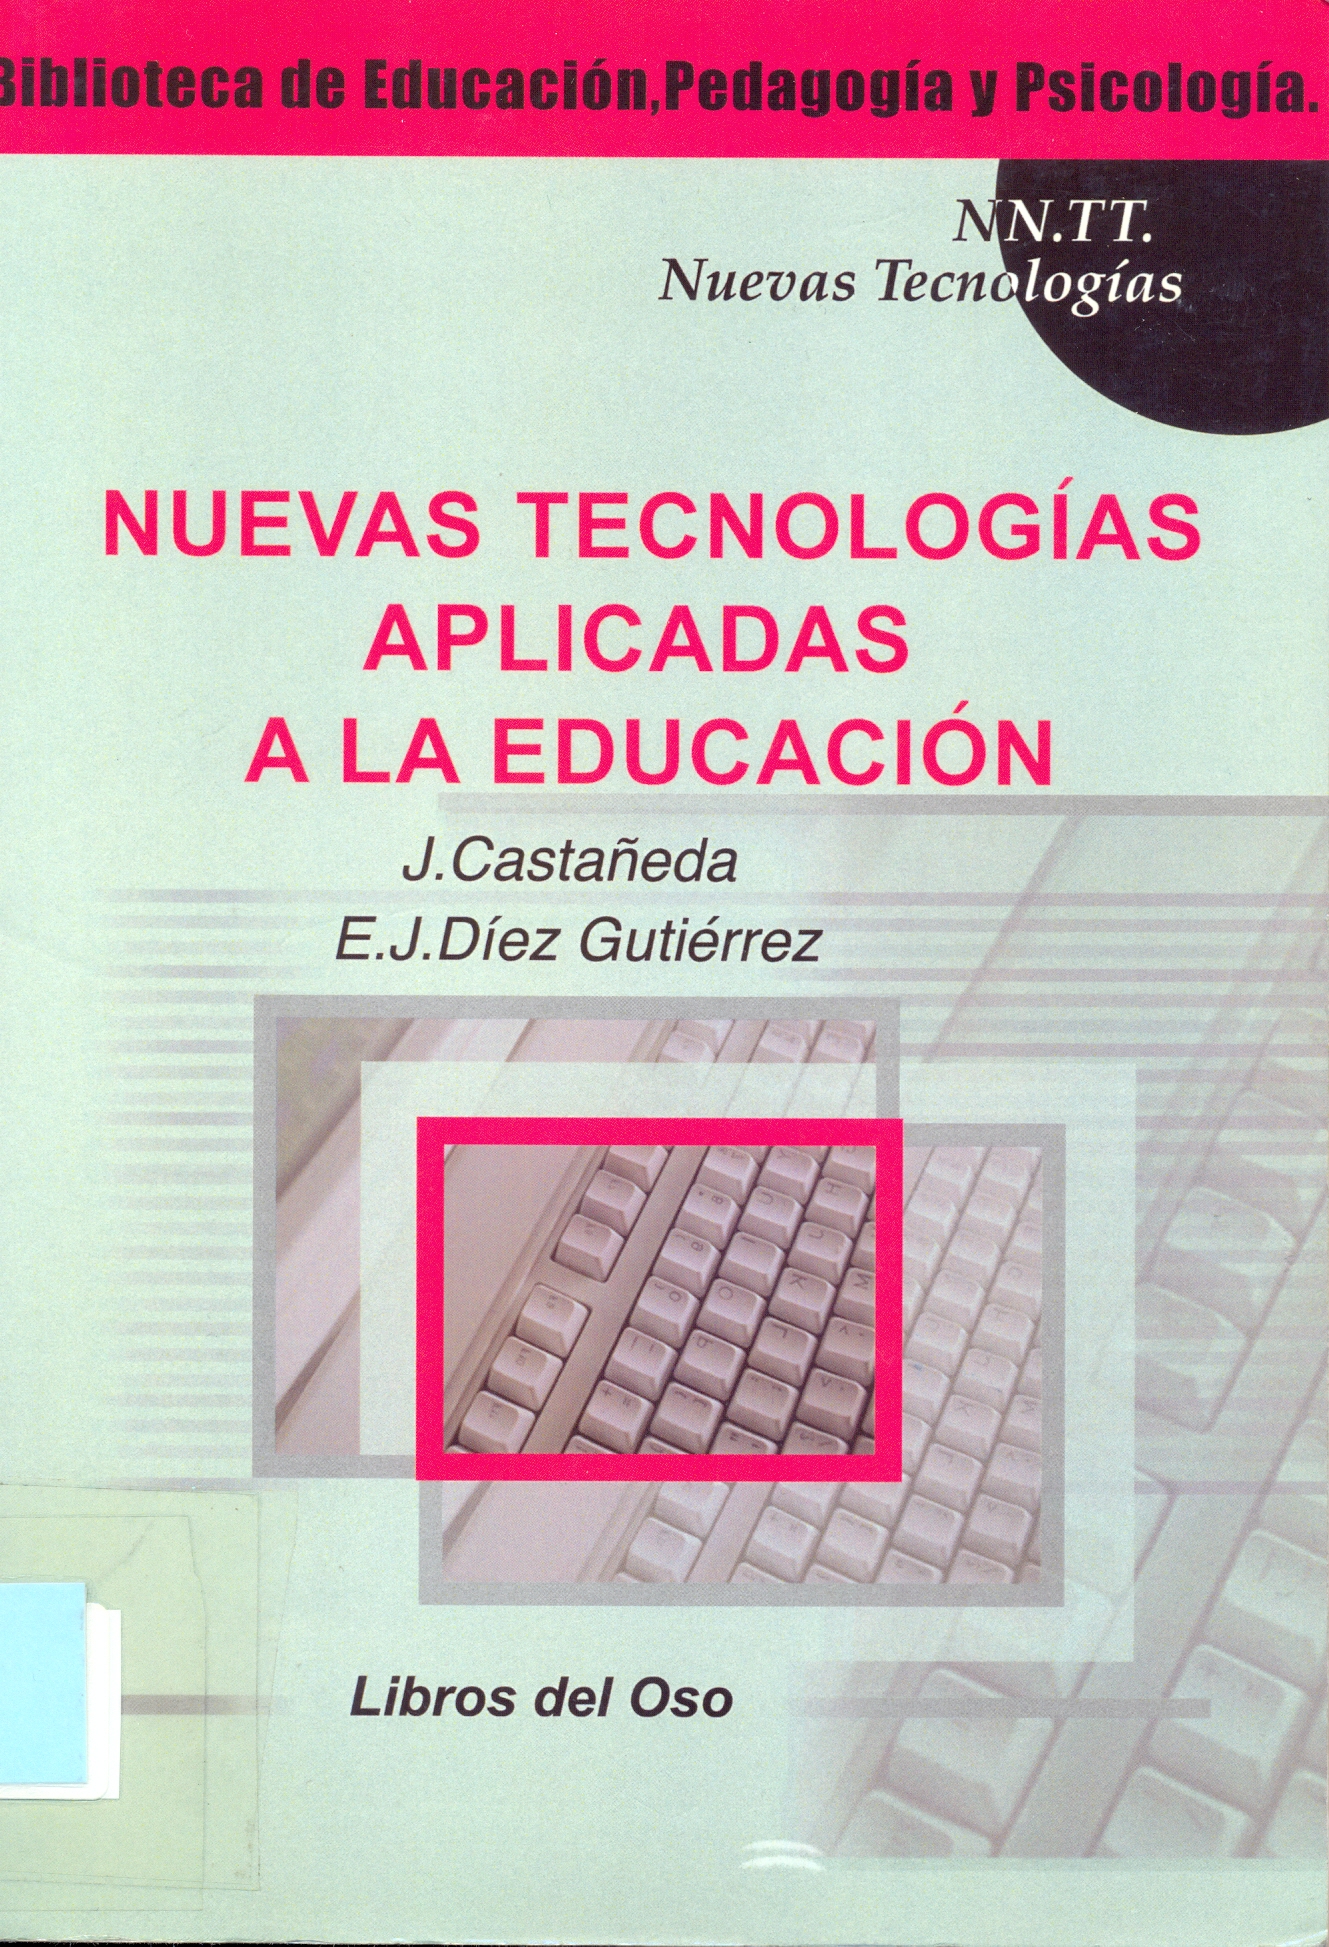 Imagen de portada del libro Nuevas tecnologías aplicadas a la educación